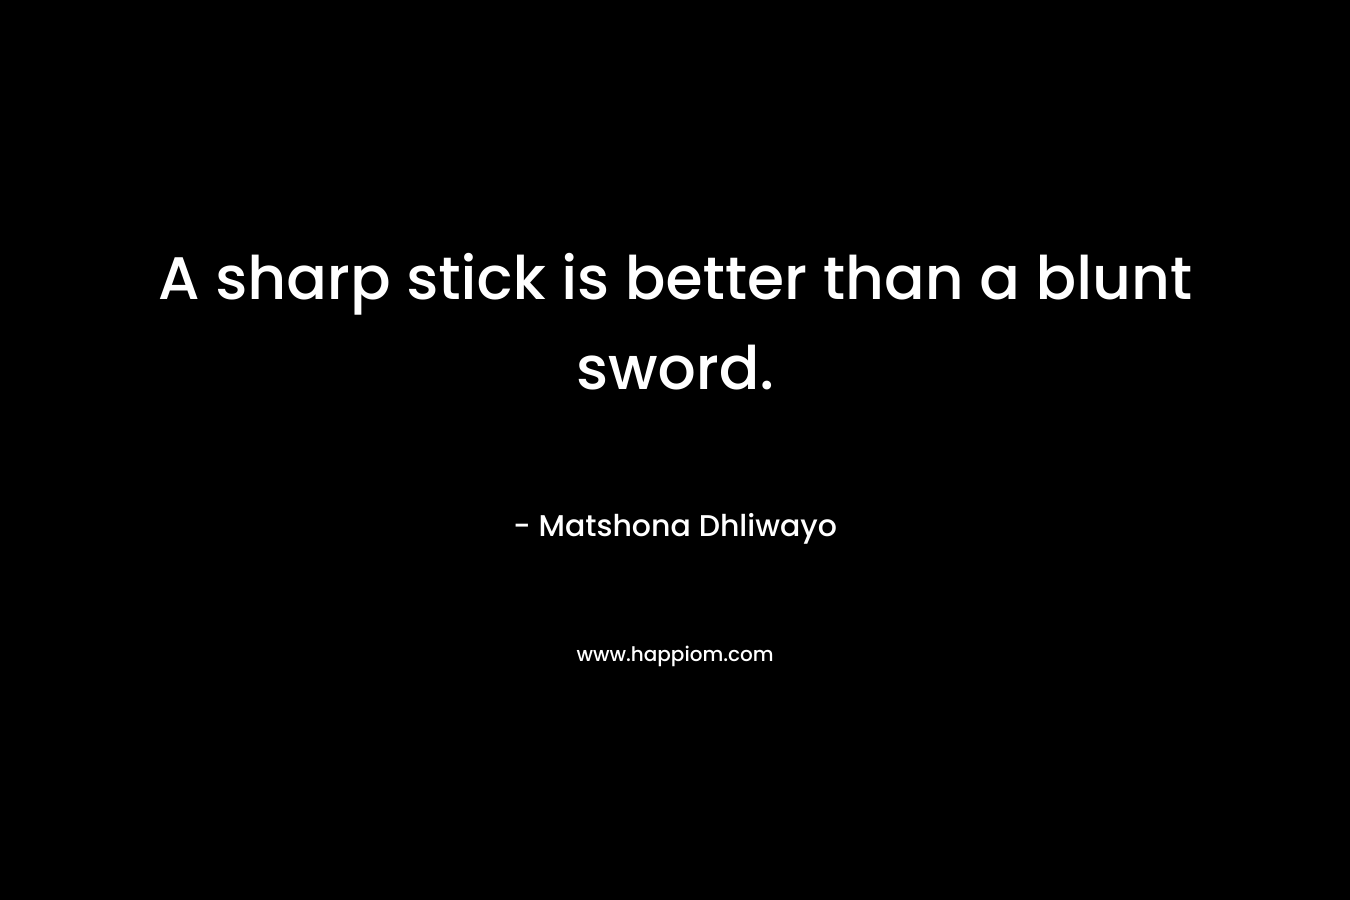 A sharp stick is better than a blunt sword.